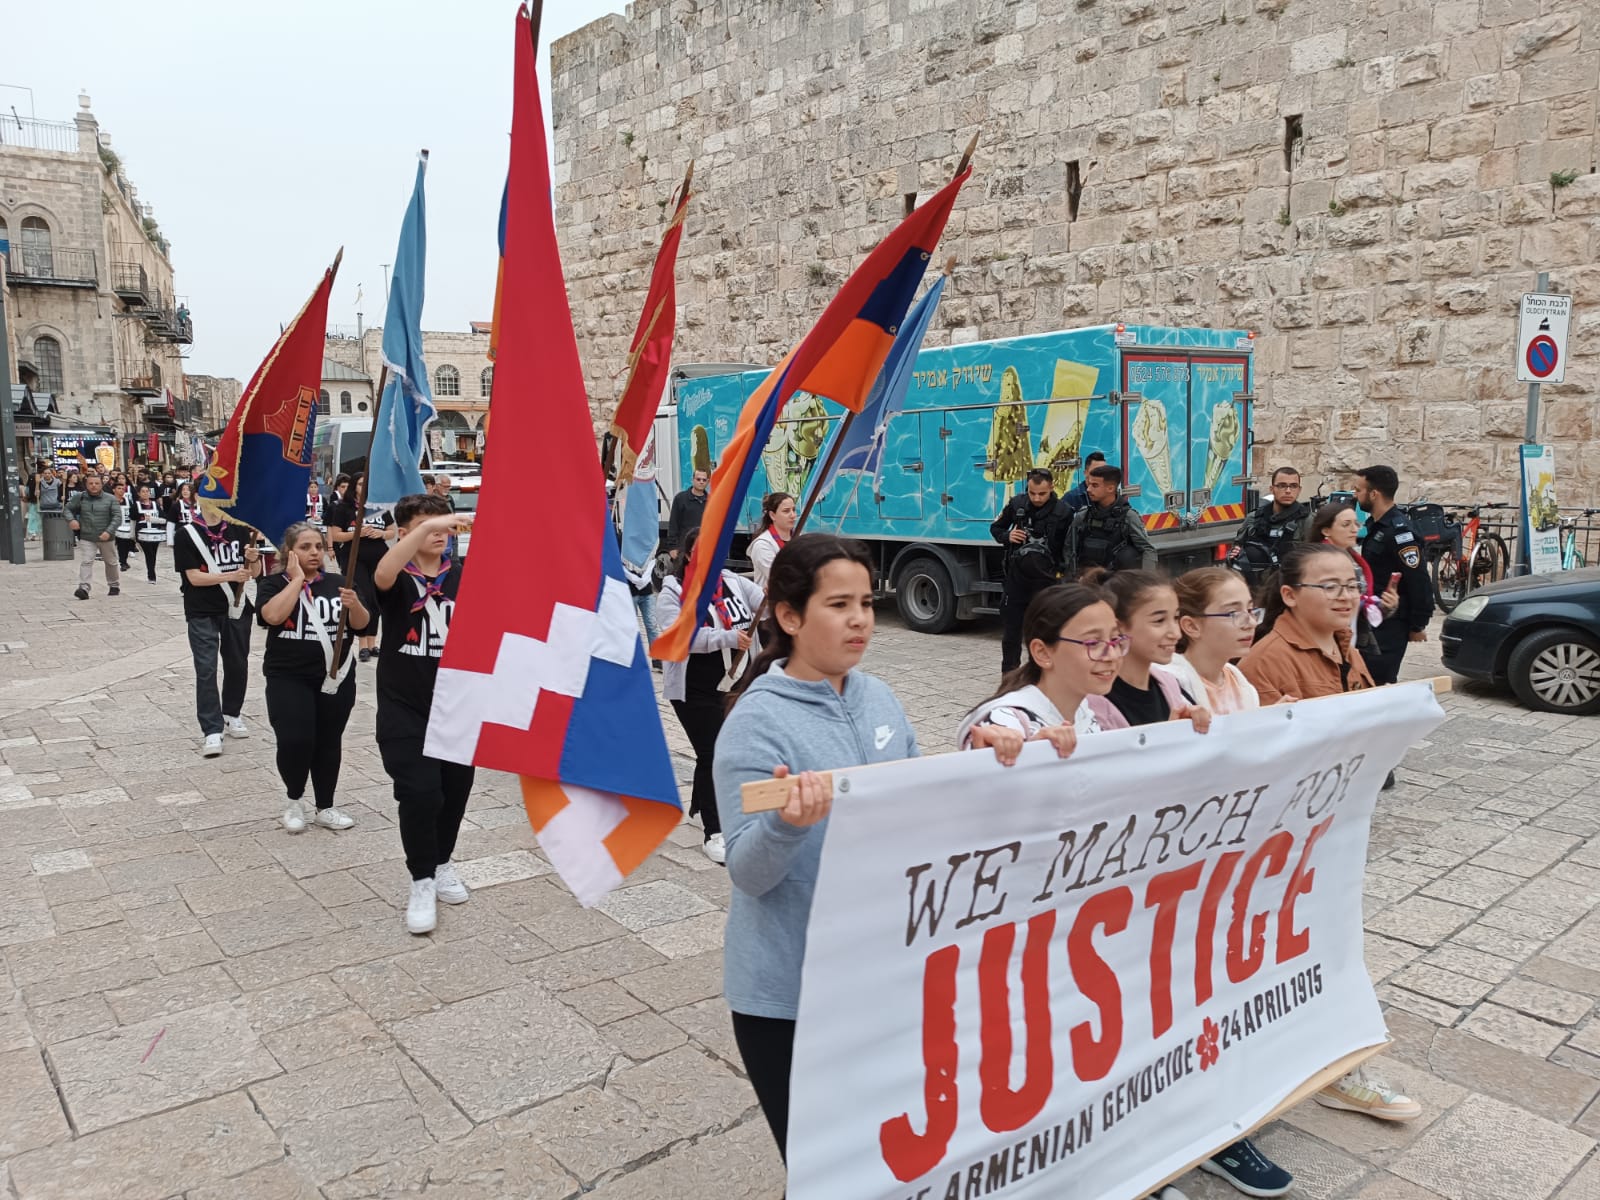 תהלוכת זיכרון לרצח העם הארמני בירושלים (צילום: ירון וייס)